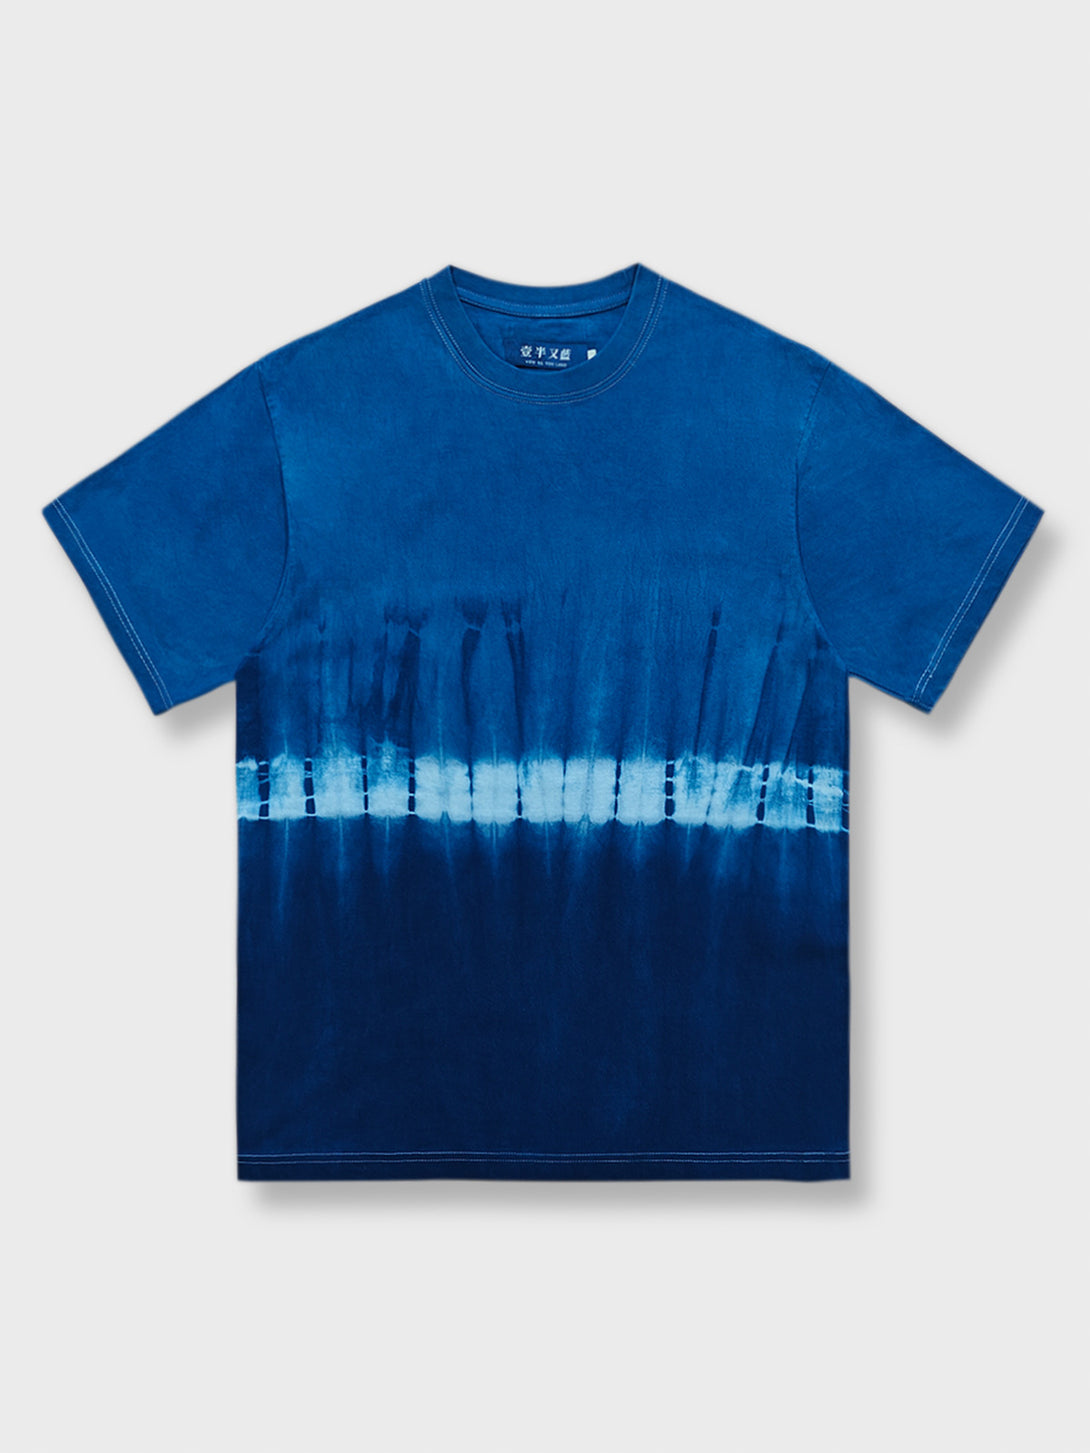 淡い色から濃い色へ変化する青のグラデーションを特徴とする絞り染めショートスリーブTシャツ。独特なアーティスティックな魅力があります。